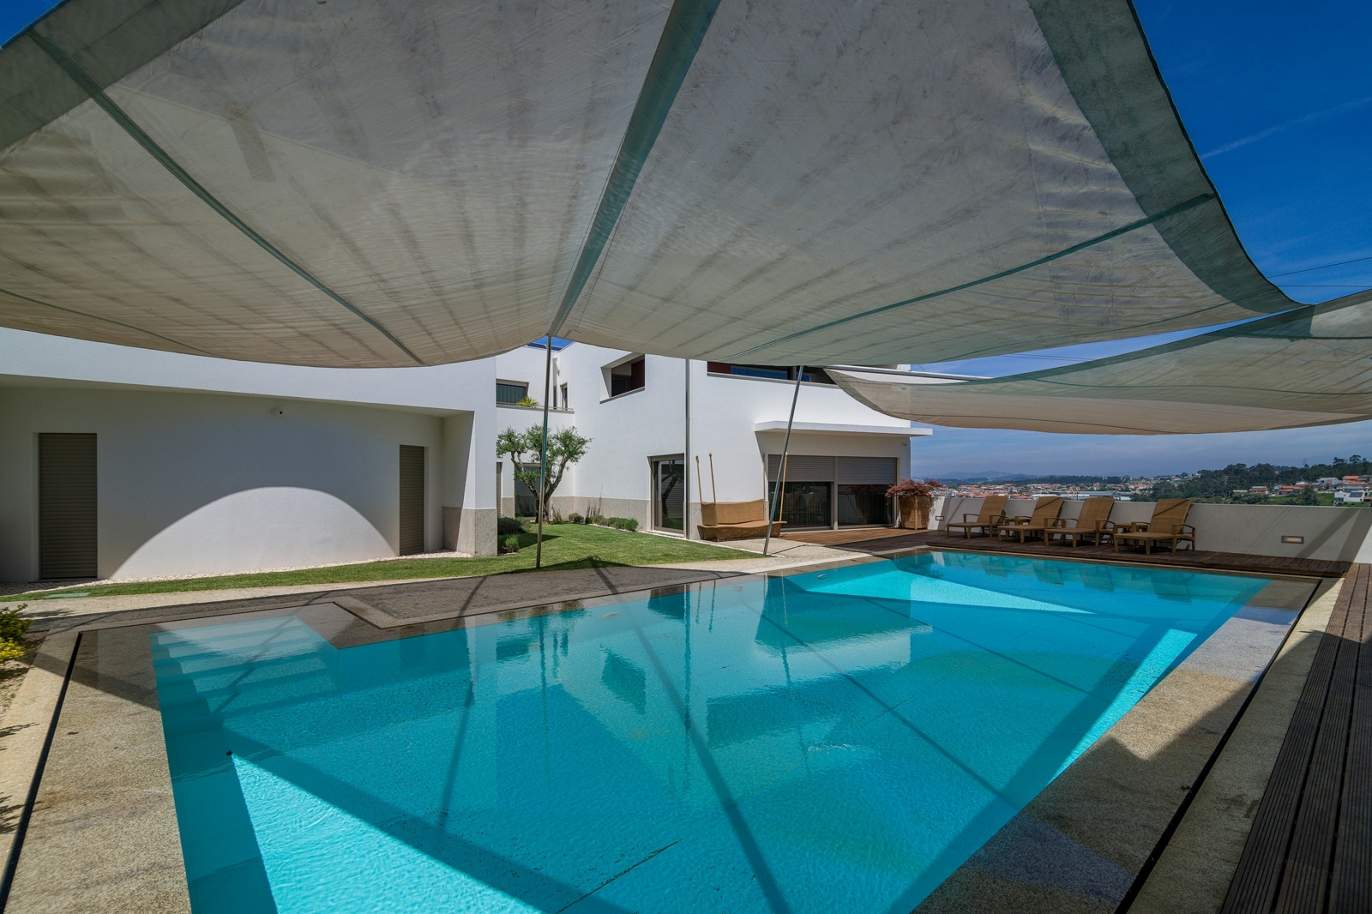 Moradia V3, com piscina e jardim, para venda, na Trofa, Porto, Portugal_154946